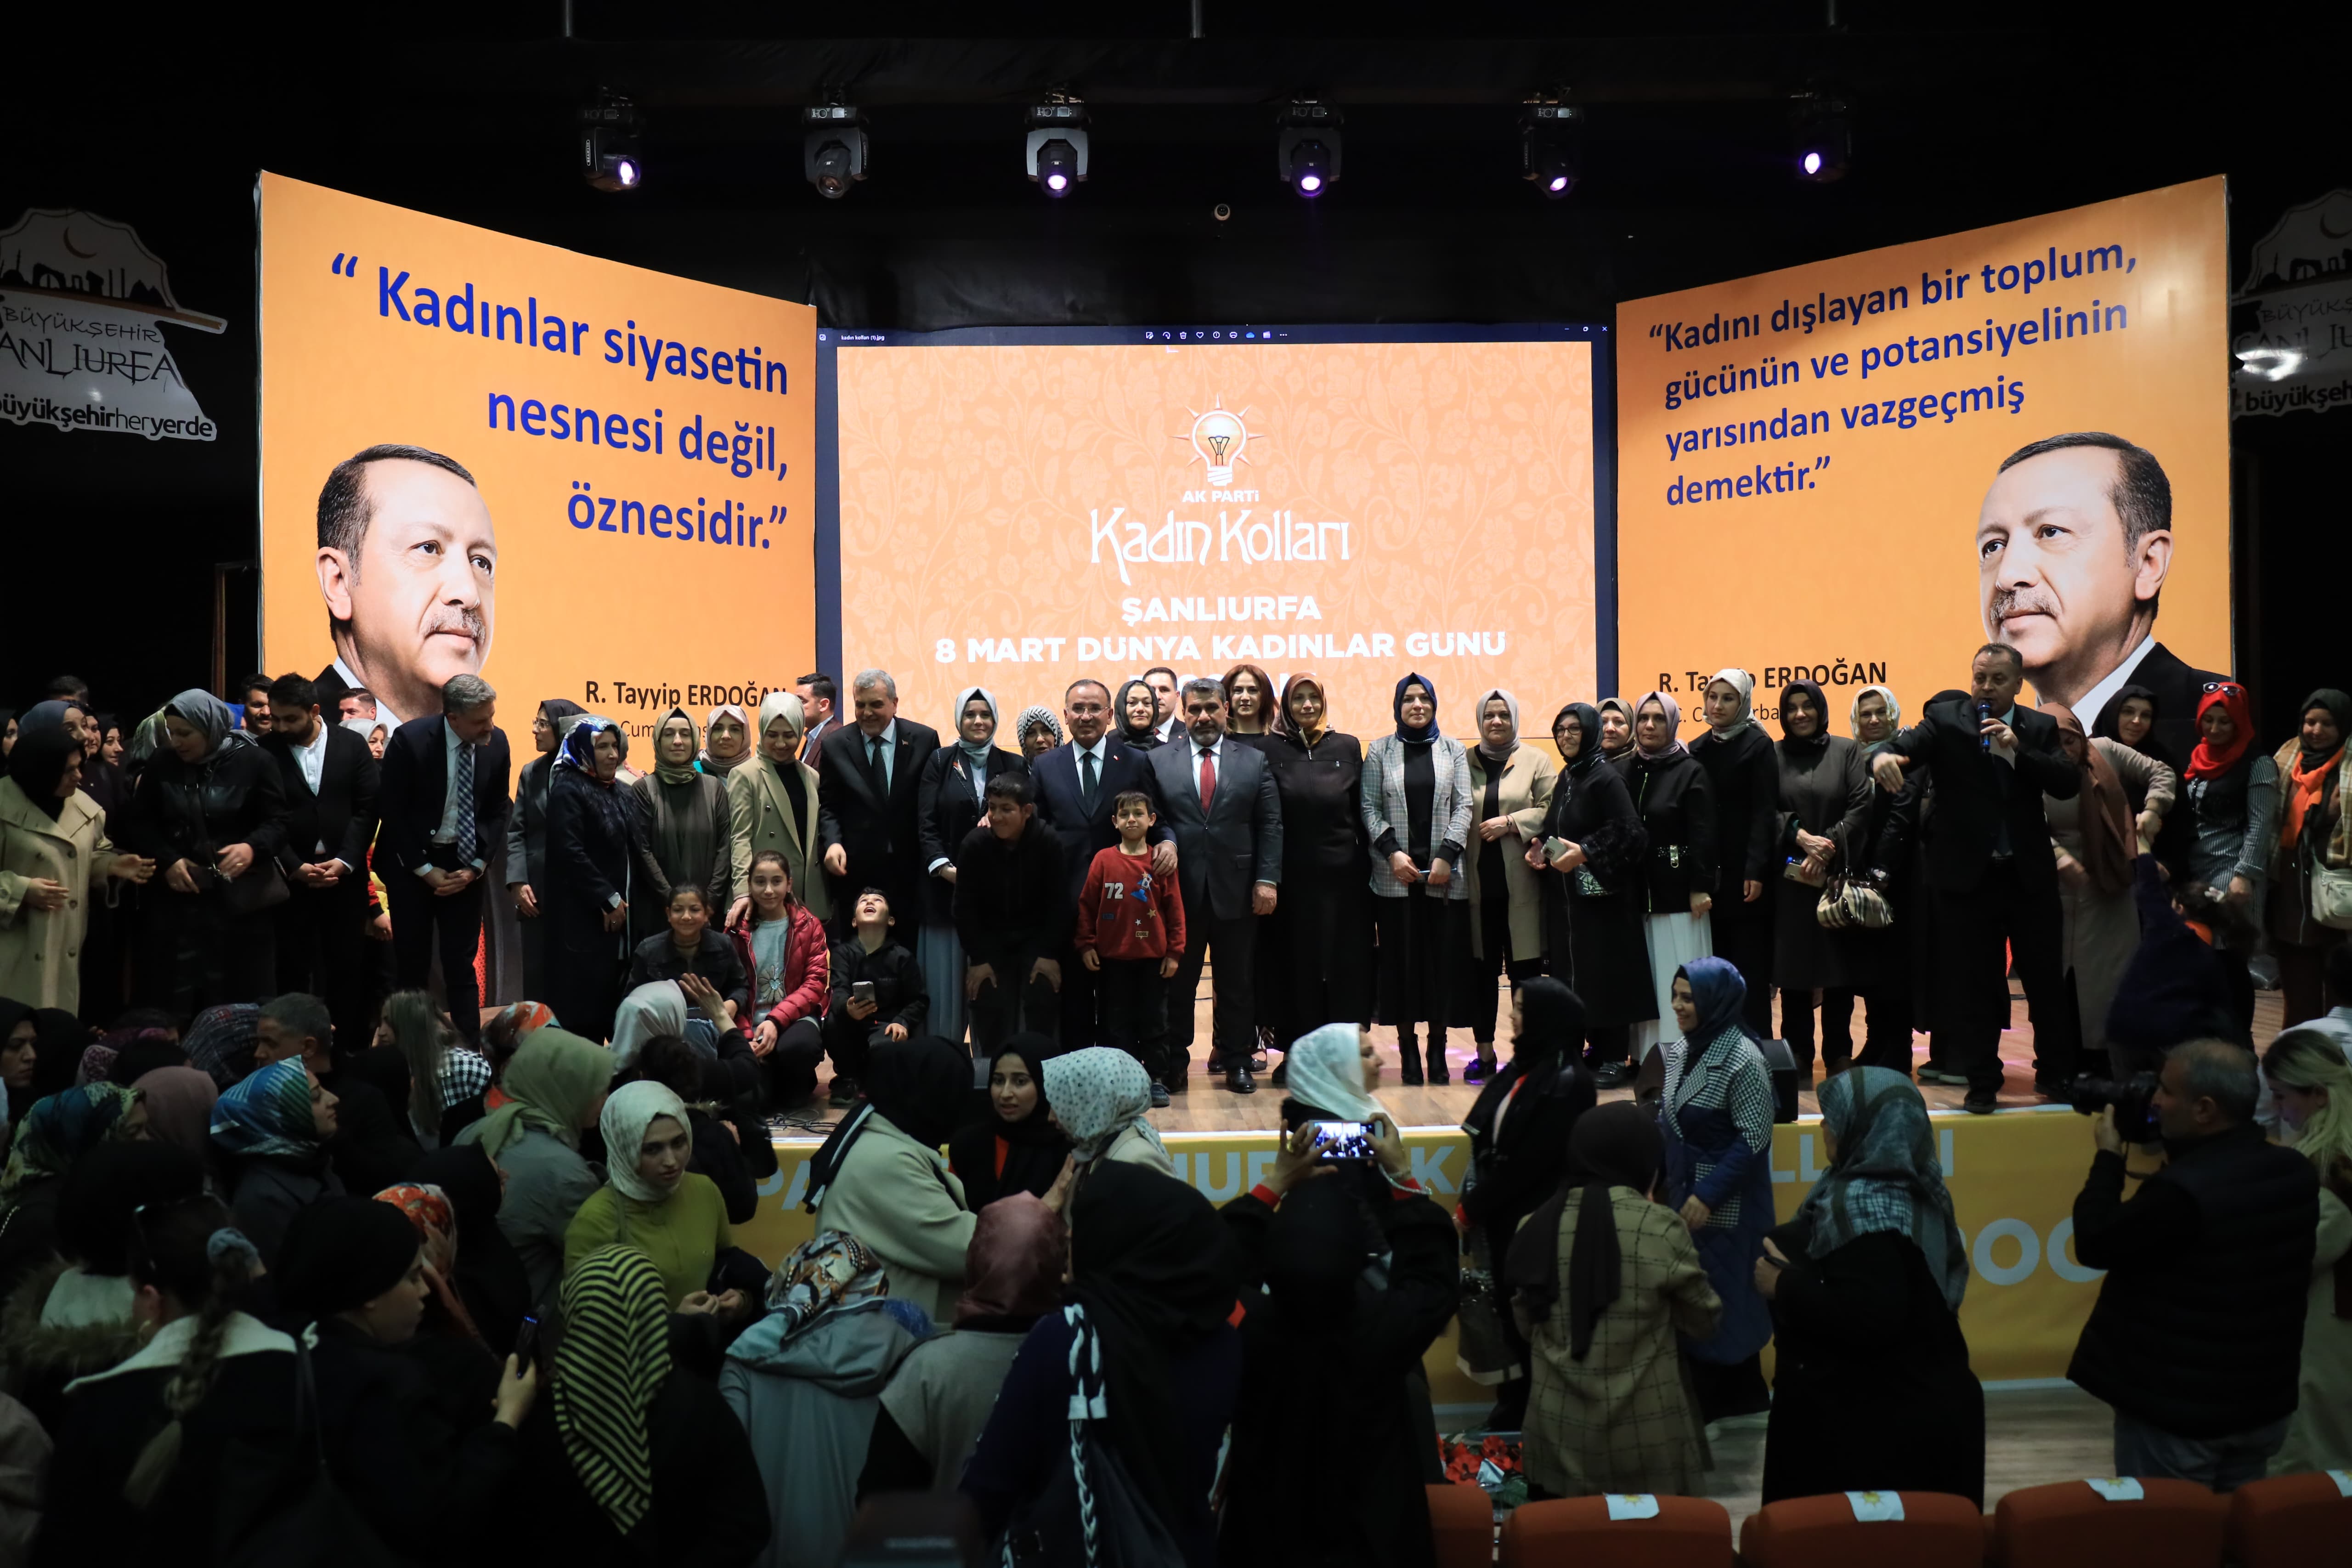 AK Parti Şanlıurfa'da 8 Mart'ı kutladı:   Bozdağ, "Kadın isterse her şey değişir"